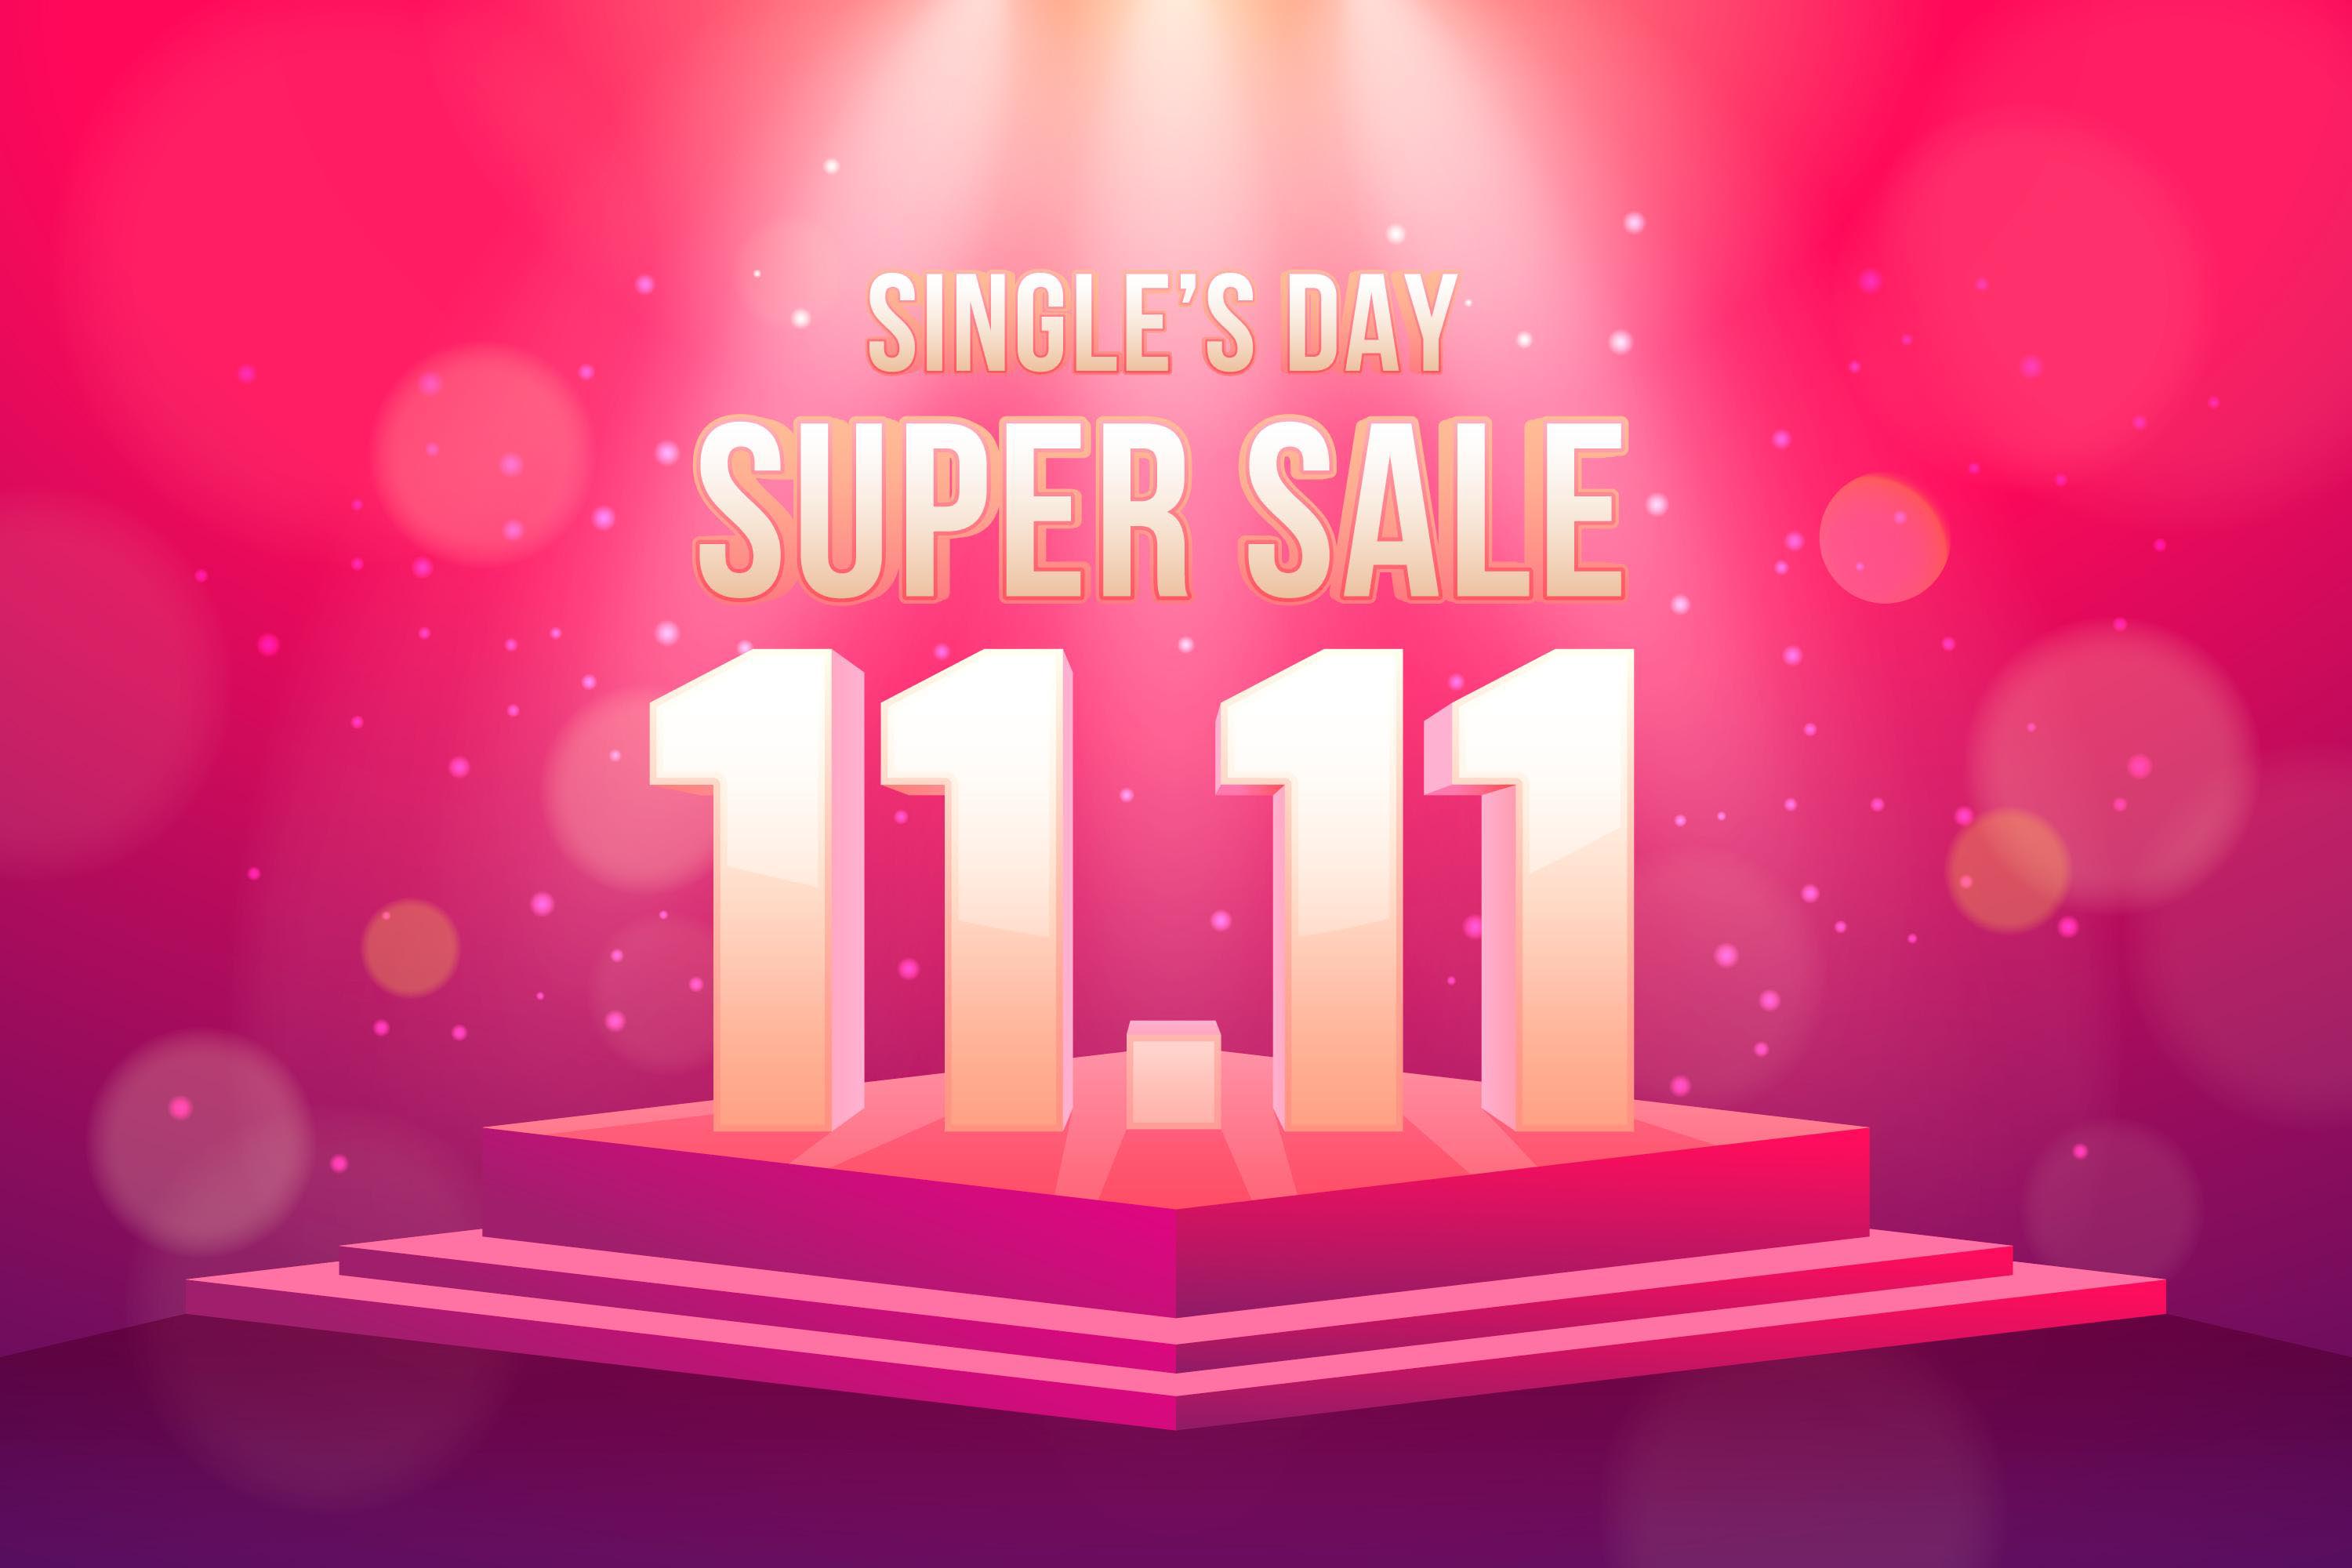 双十一11.11现实的单身日/购物节散景效果源文件realistic-singles-day-bokeh-effect